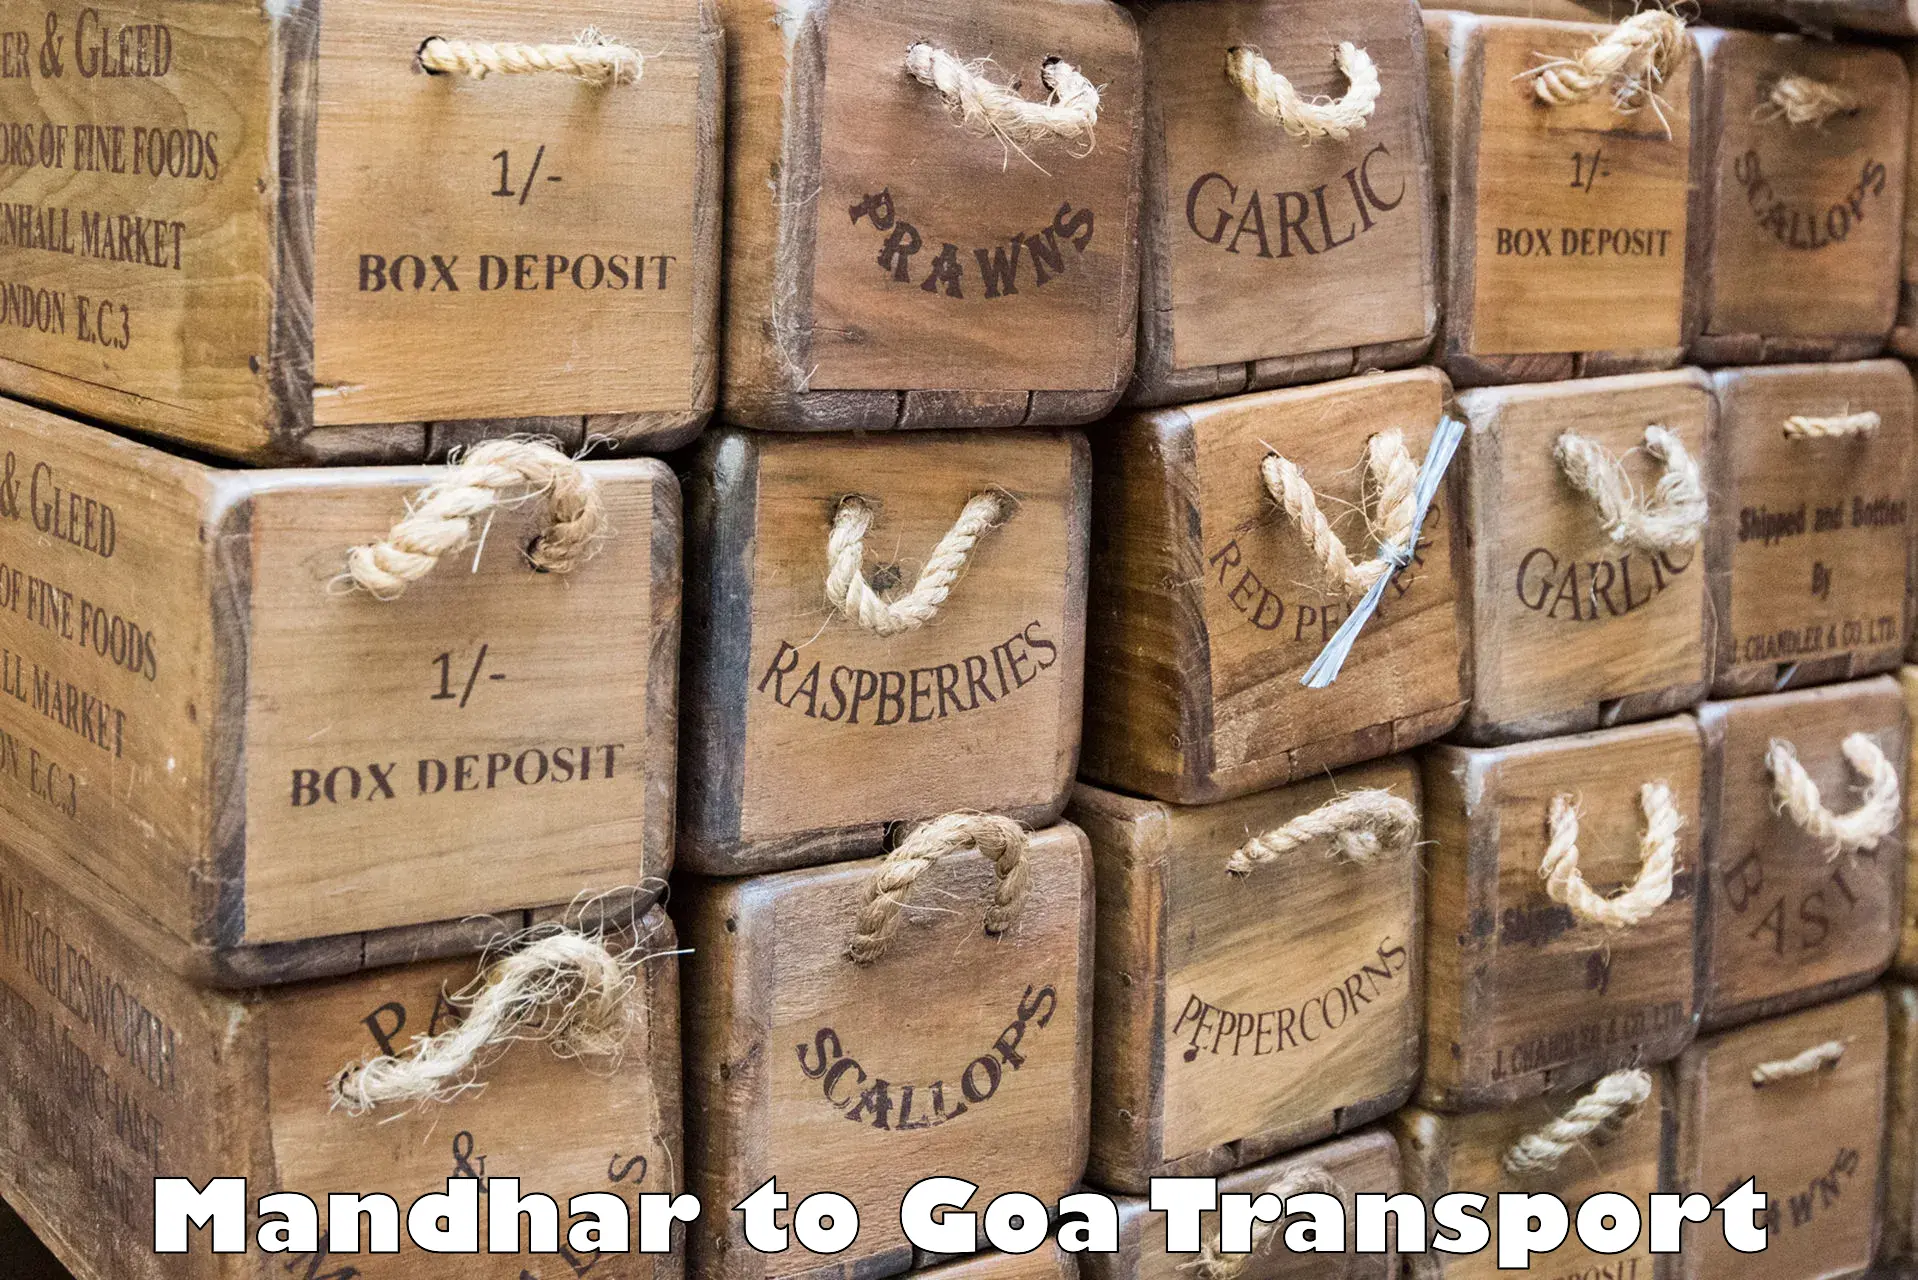 Nationwide transport services Mandhar to Panjim